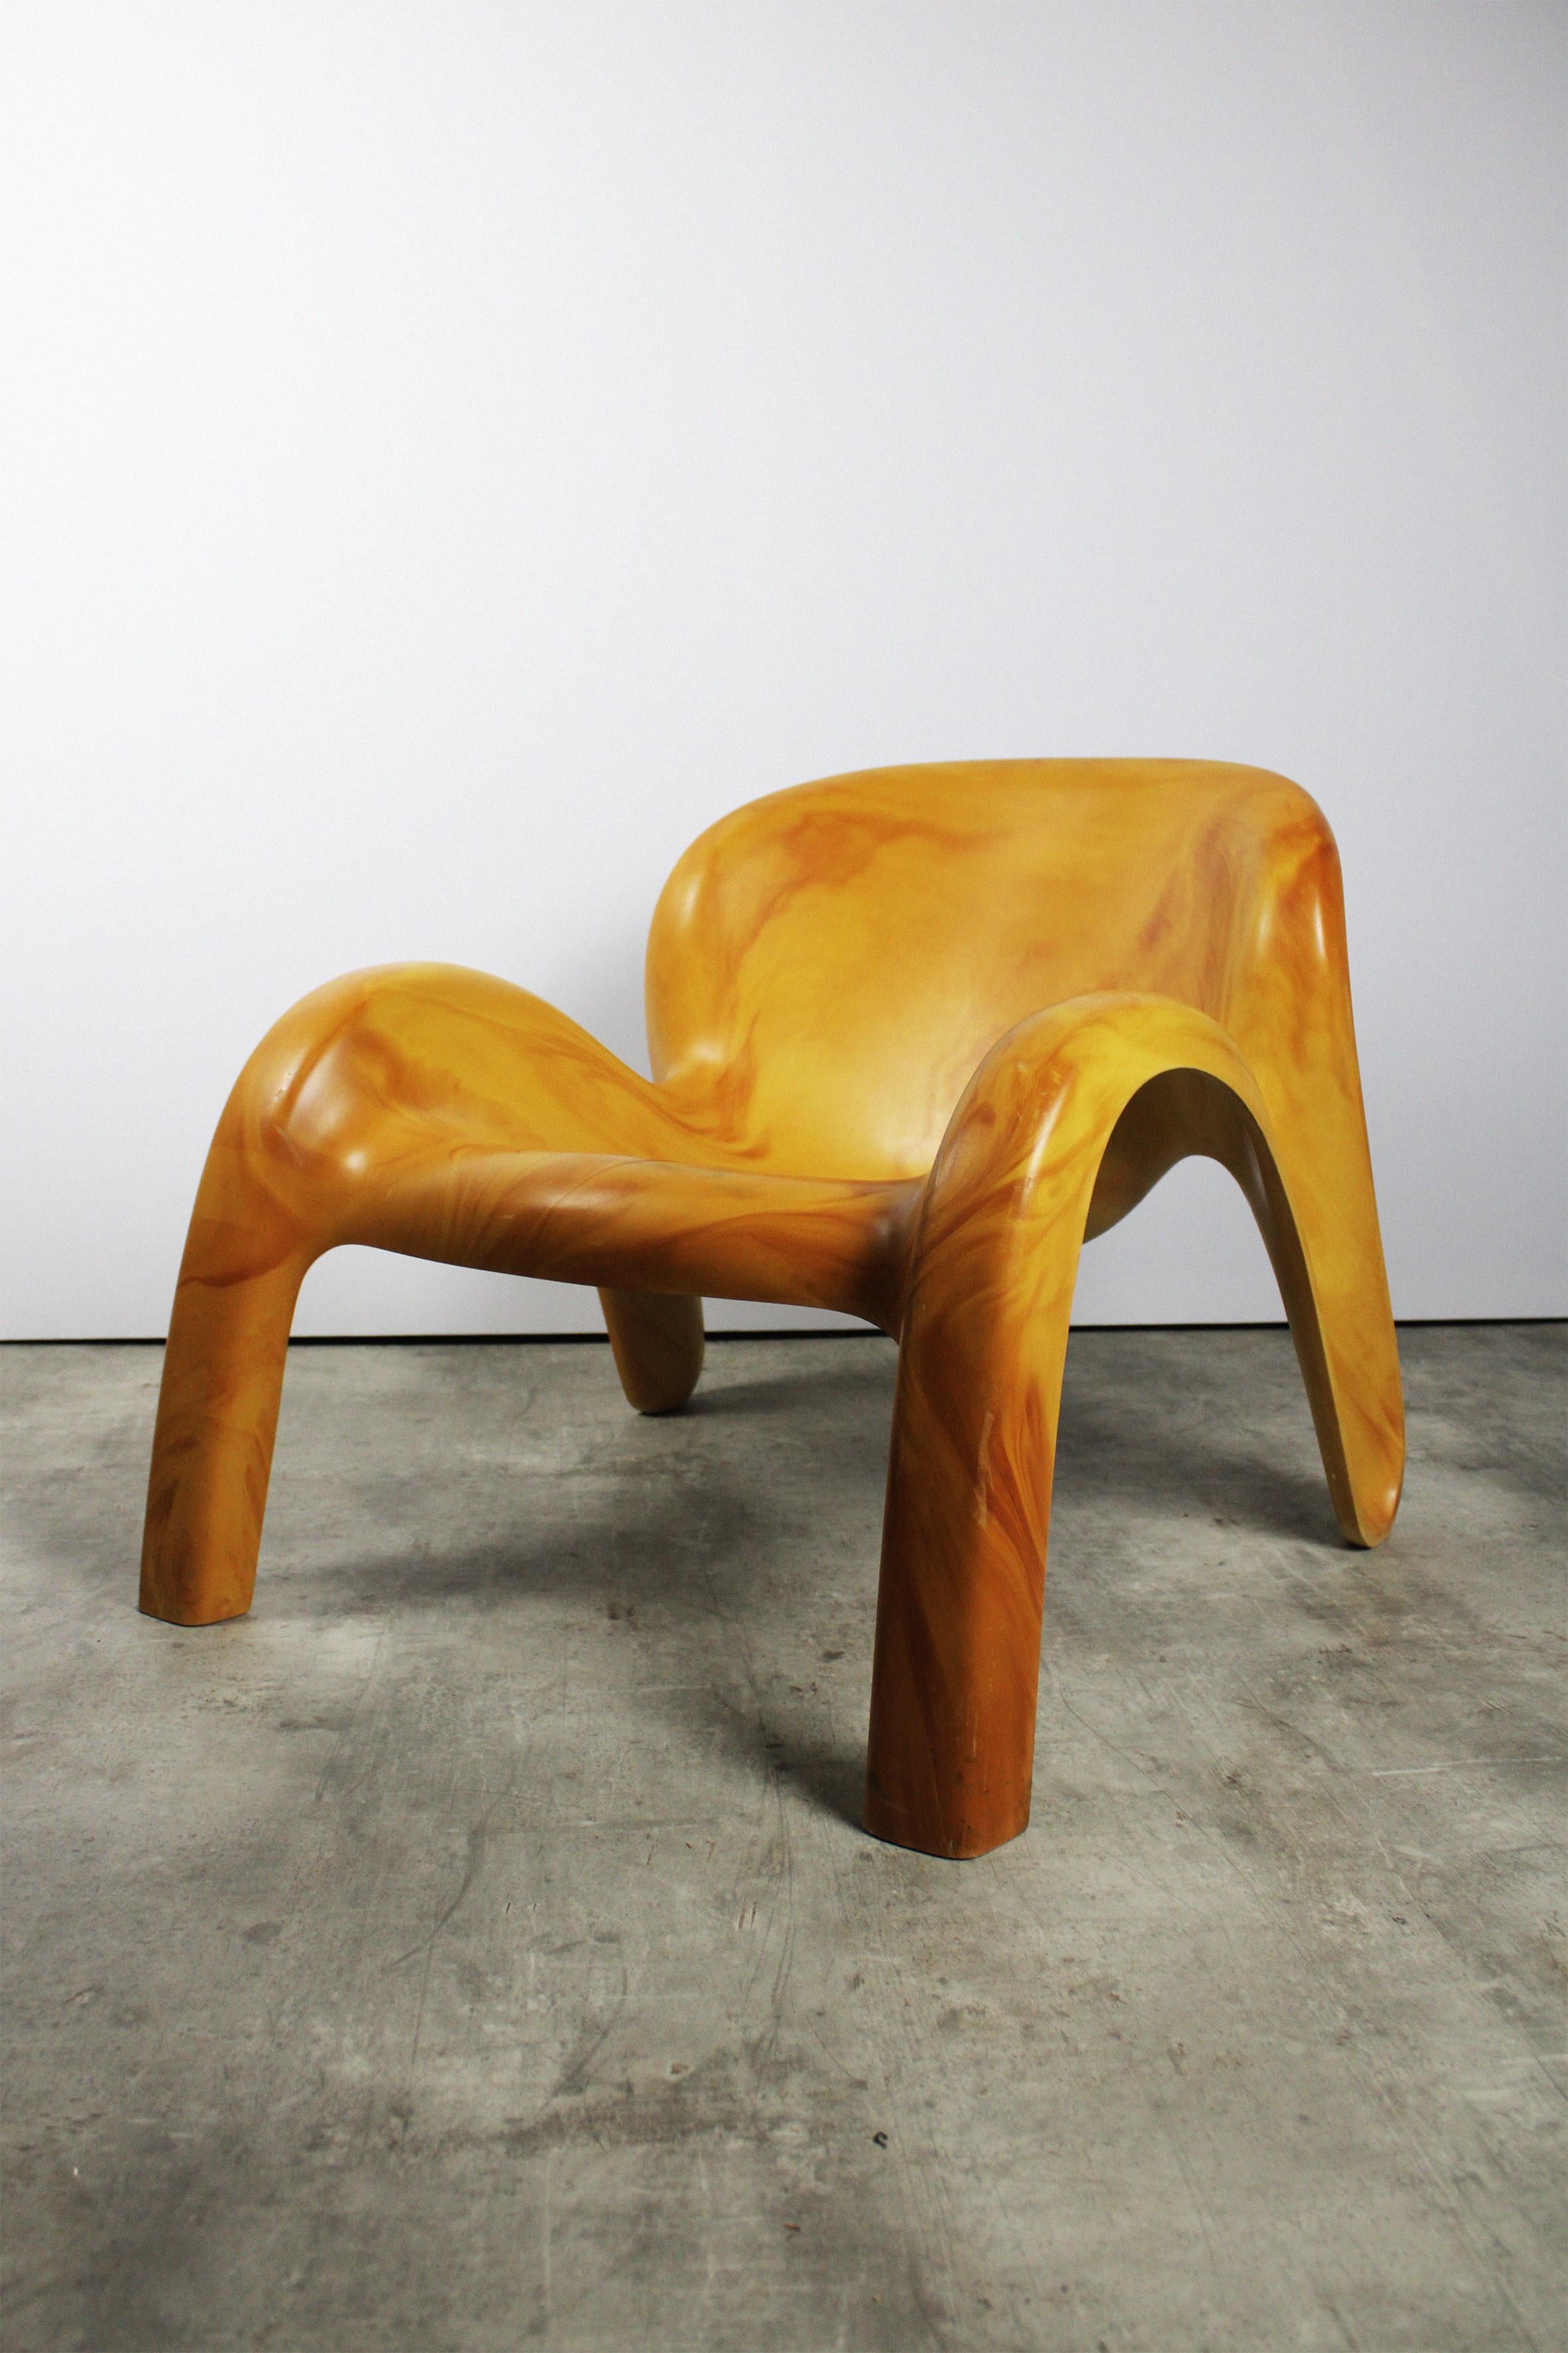 Cette chaise de jardin GN2 est l'une des pièces les plus appréciées de Peter Ghyczy. Cette variante en jaune ocre est une pièce qui n'a été fabriquée qu'à quelques exemplaires et qui n'est plus disponible nulle part. La chaise a été conçue en 1970